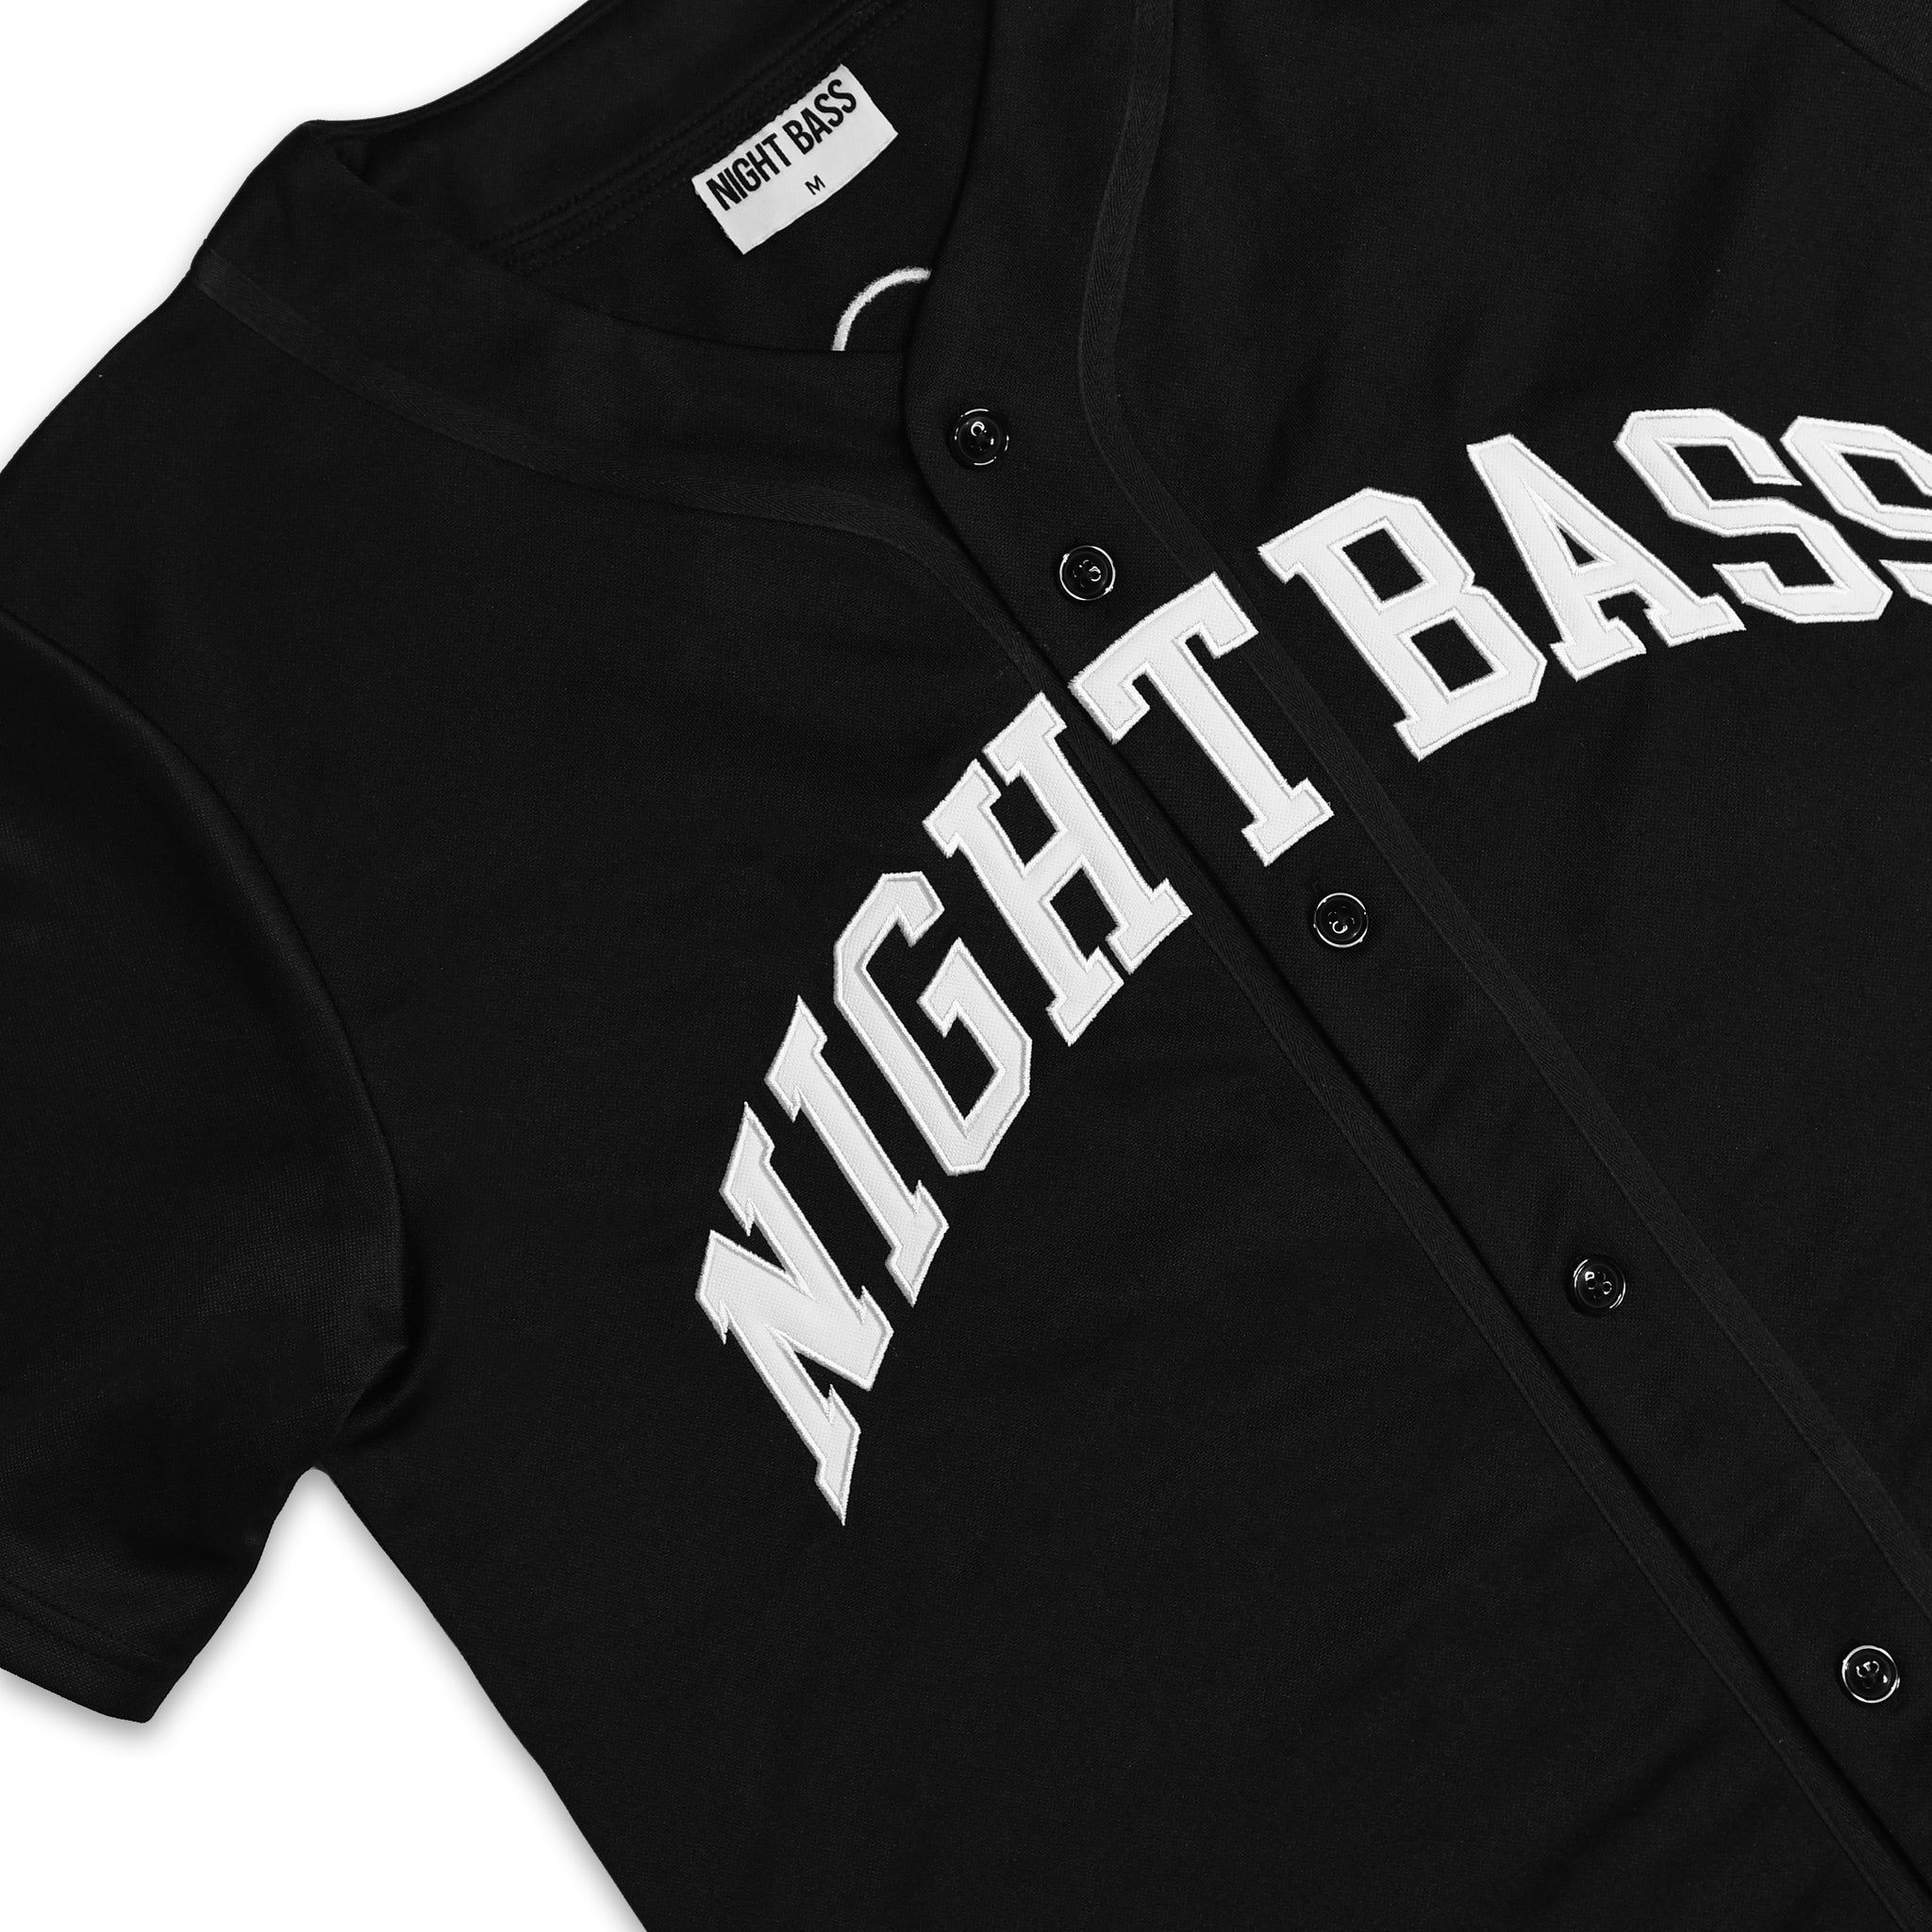 La Baseball Jersey - Black/White Black/White / M